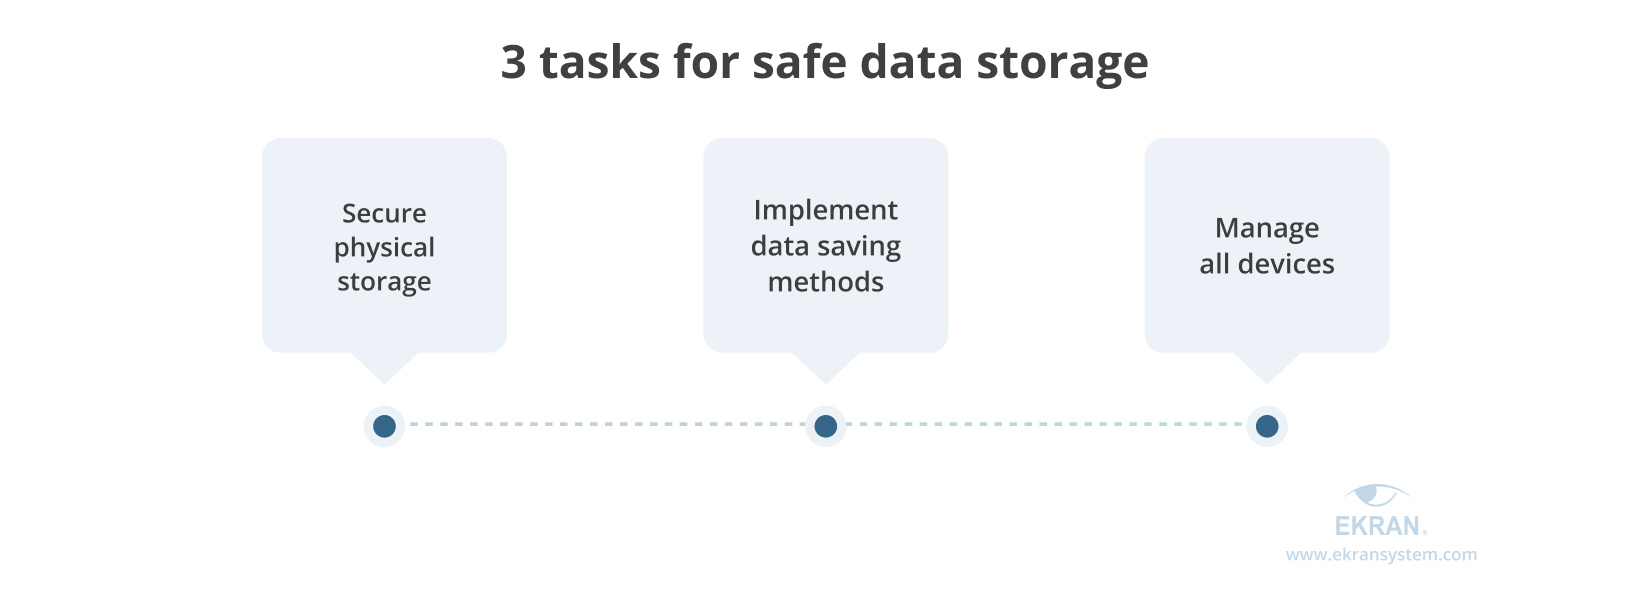 tasks for safe data storage